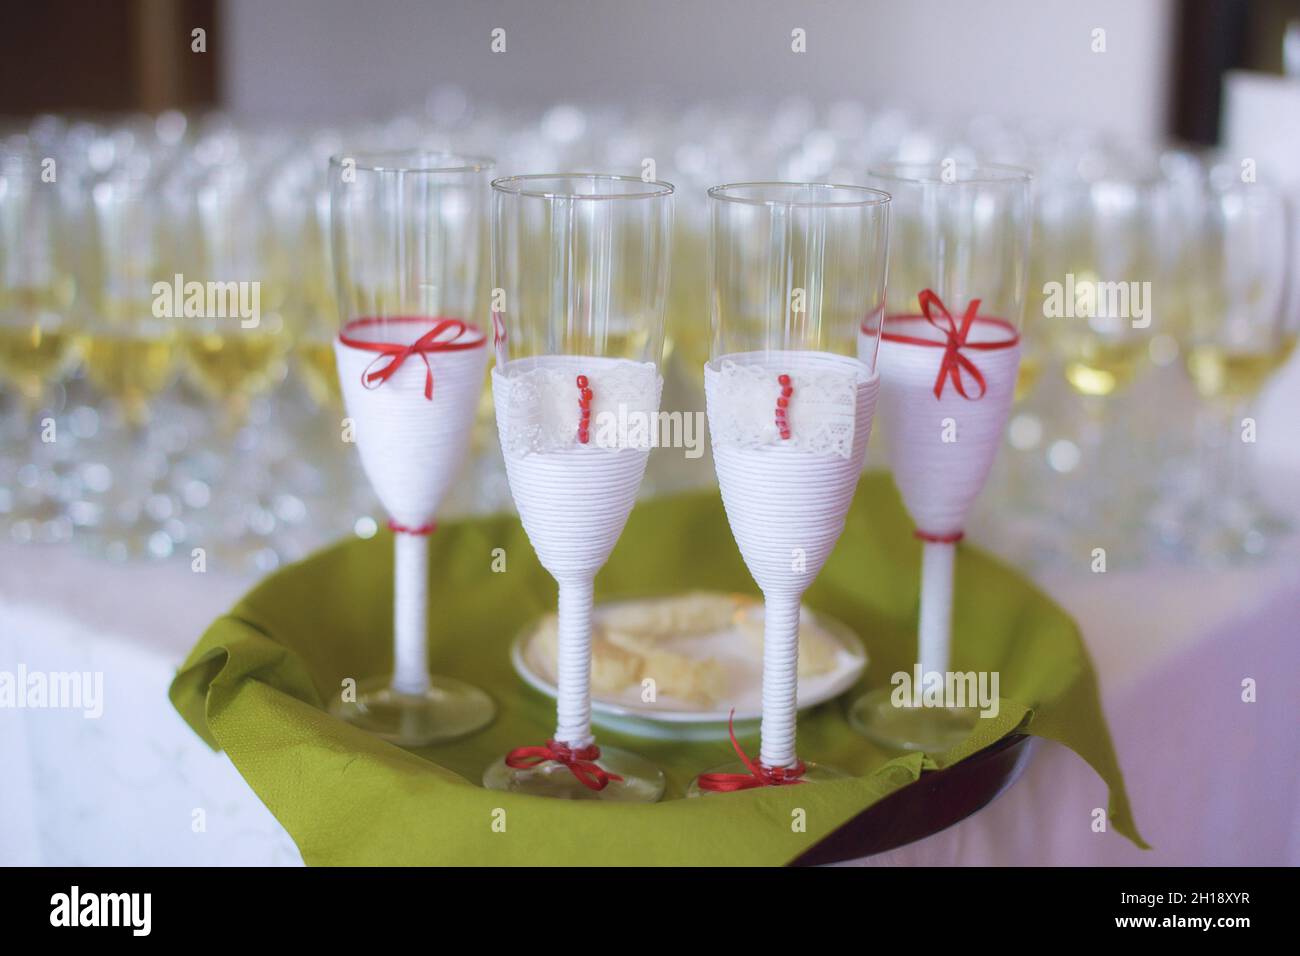 Volle Gläser Sekt oder Champagner mit vier dekorierten im Vordergrund auf einem grünen Tablett, das für Braut, Bräutigam und Zeugen ausgewählt wurde Stockfoto